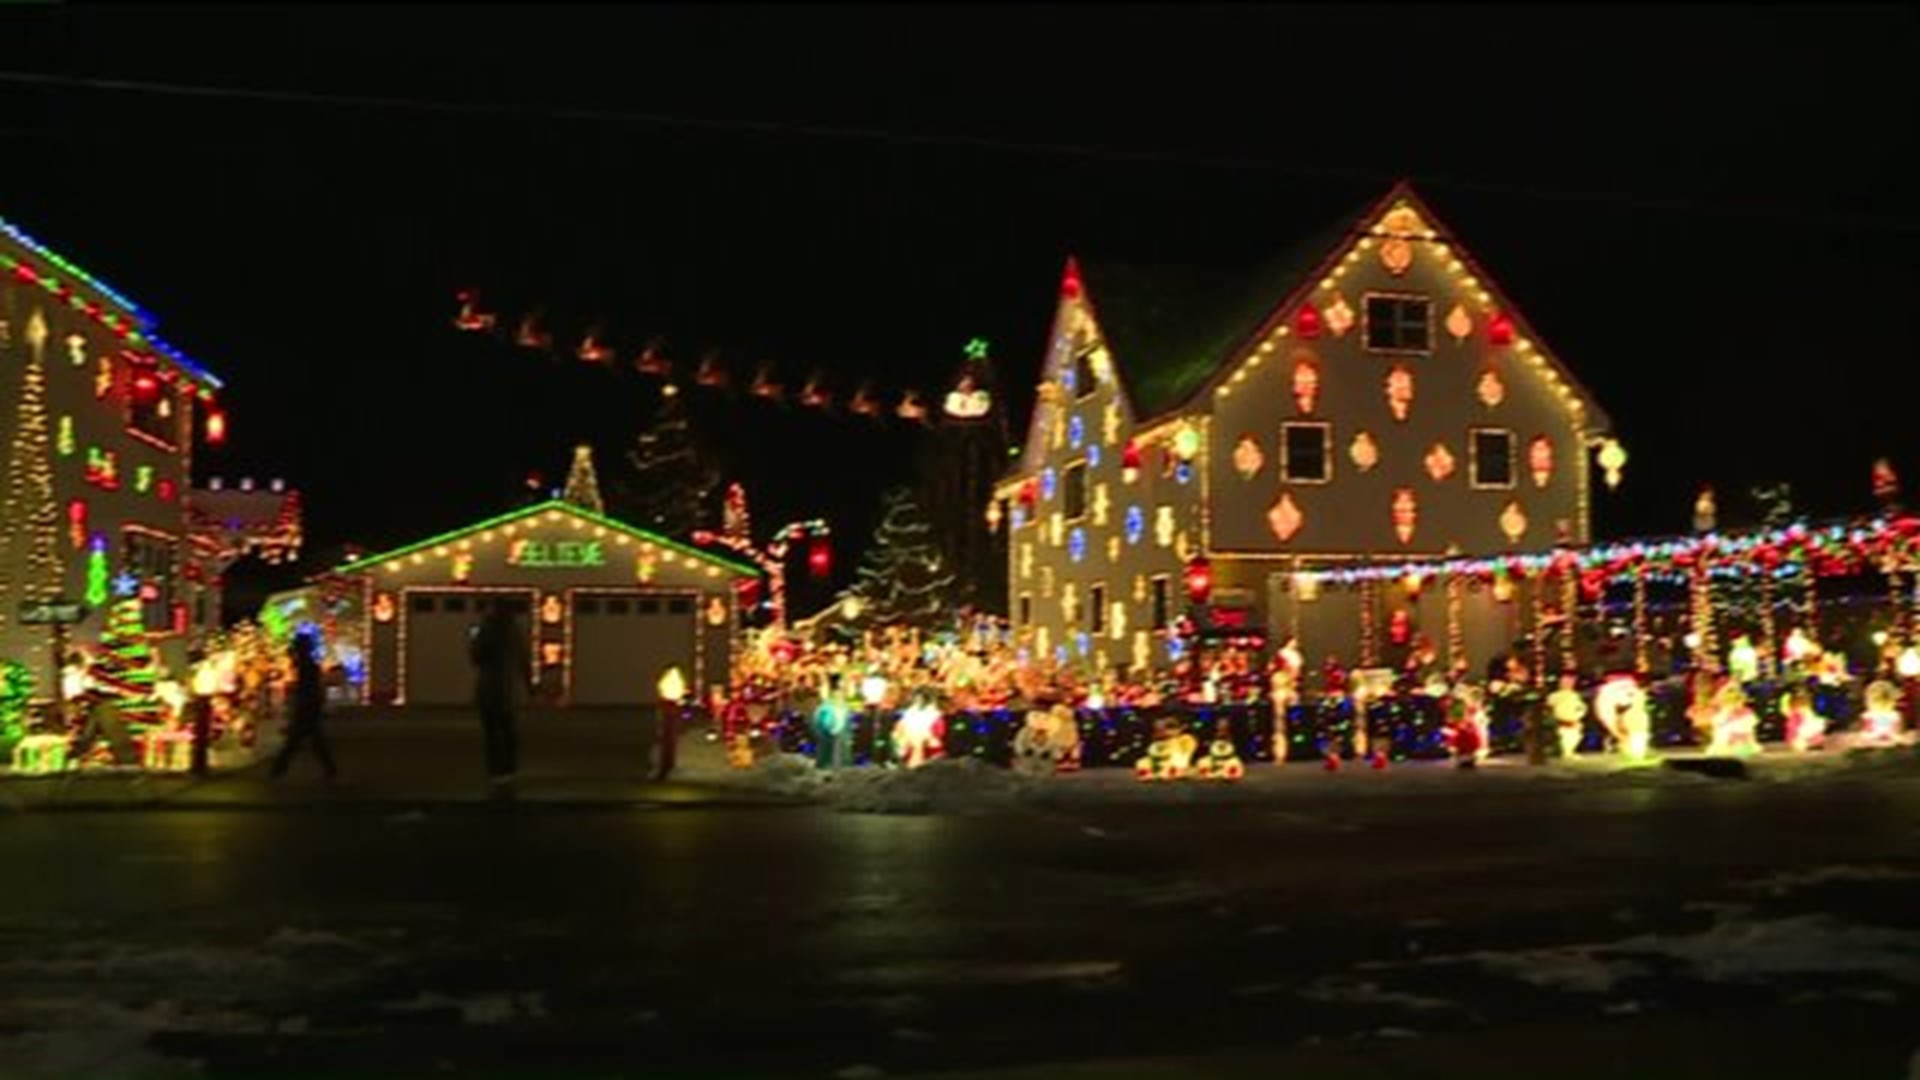 Massive Christmas Light Display in Peckville